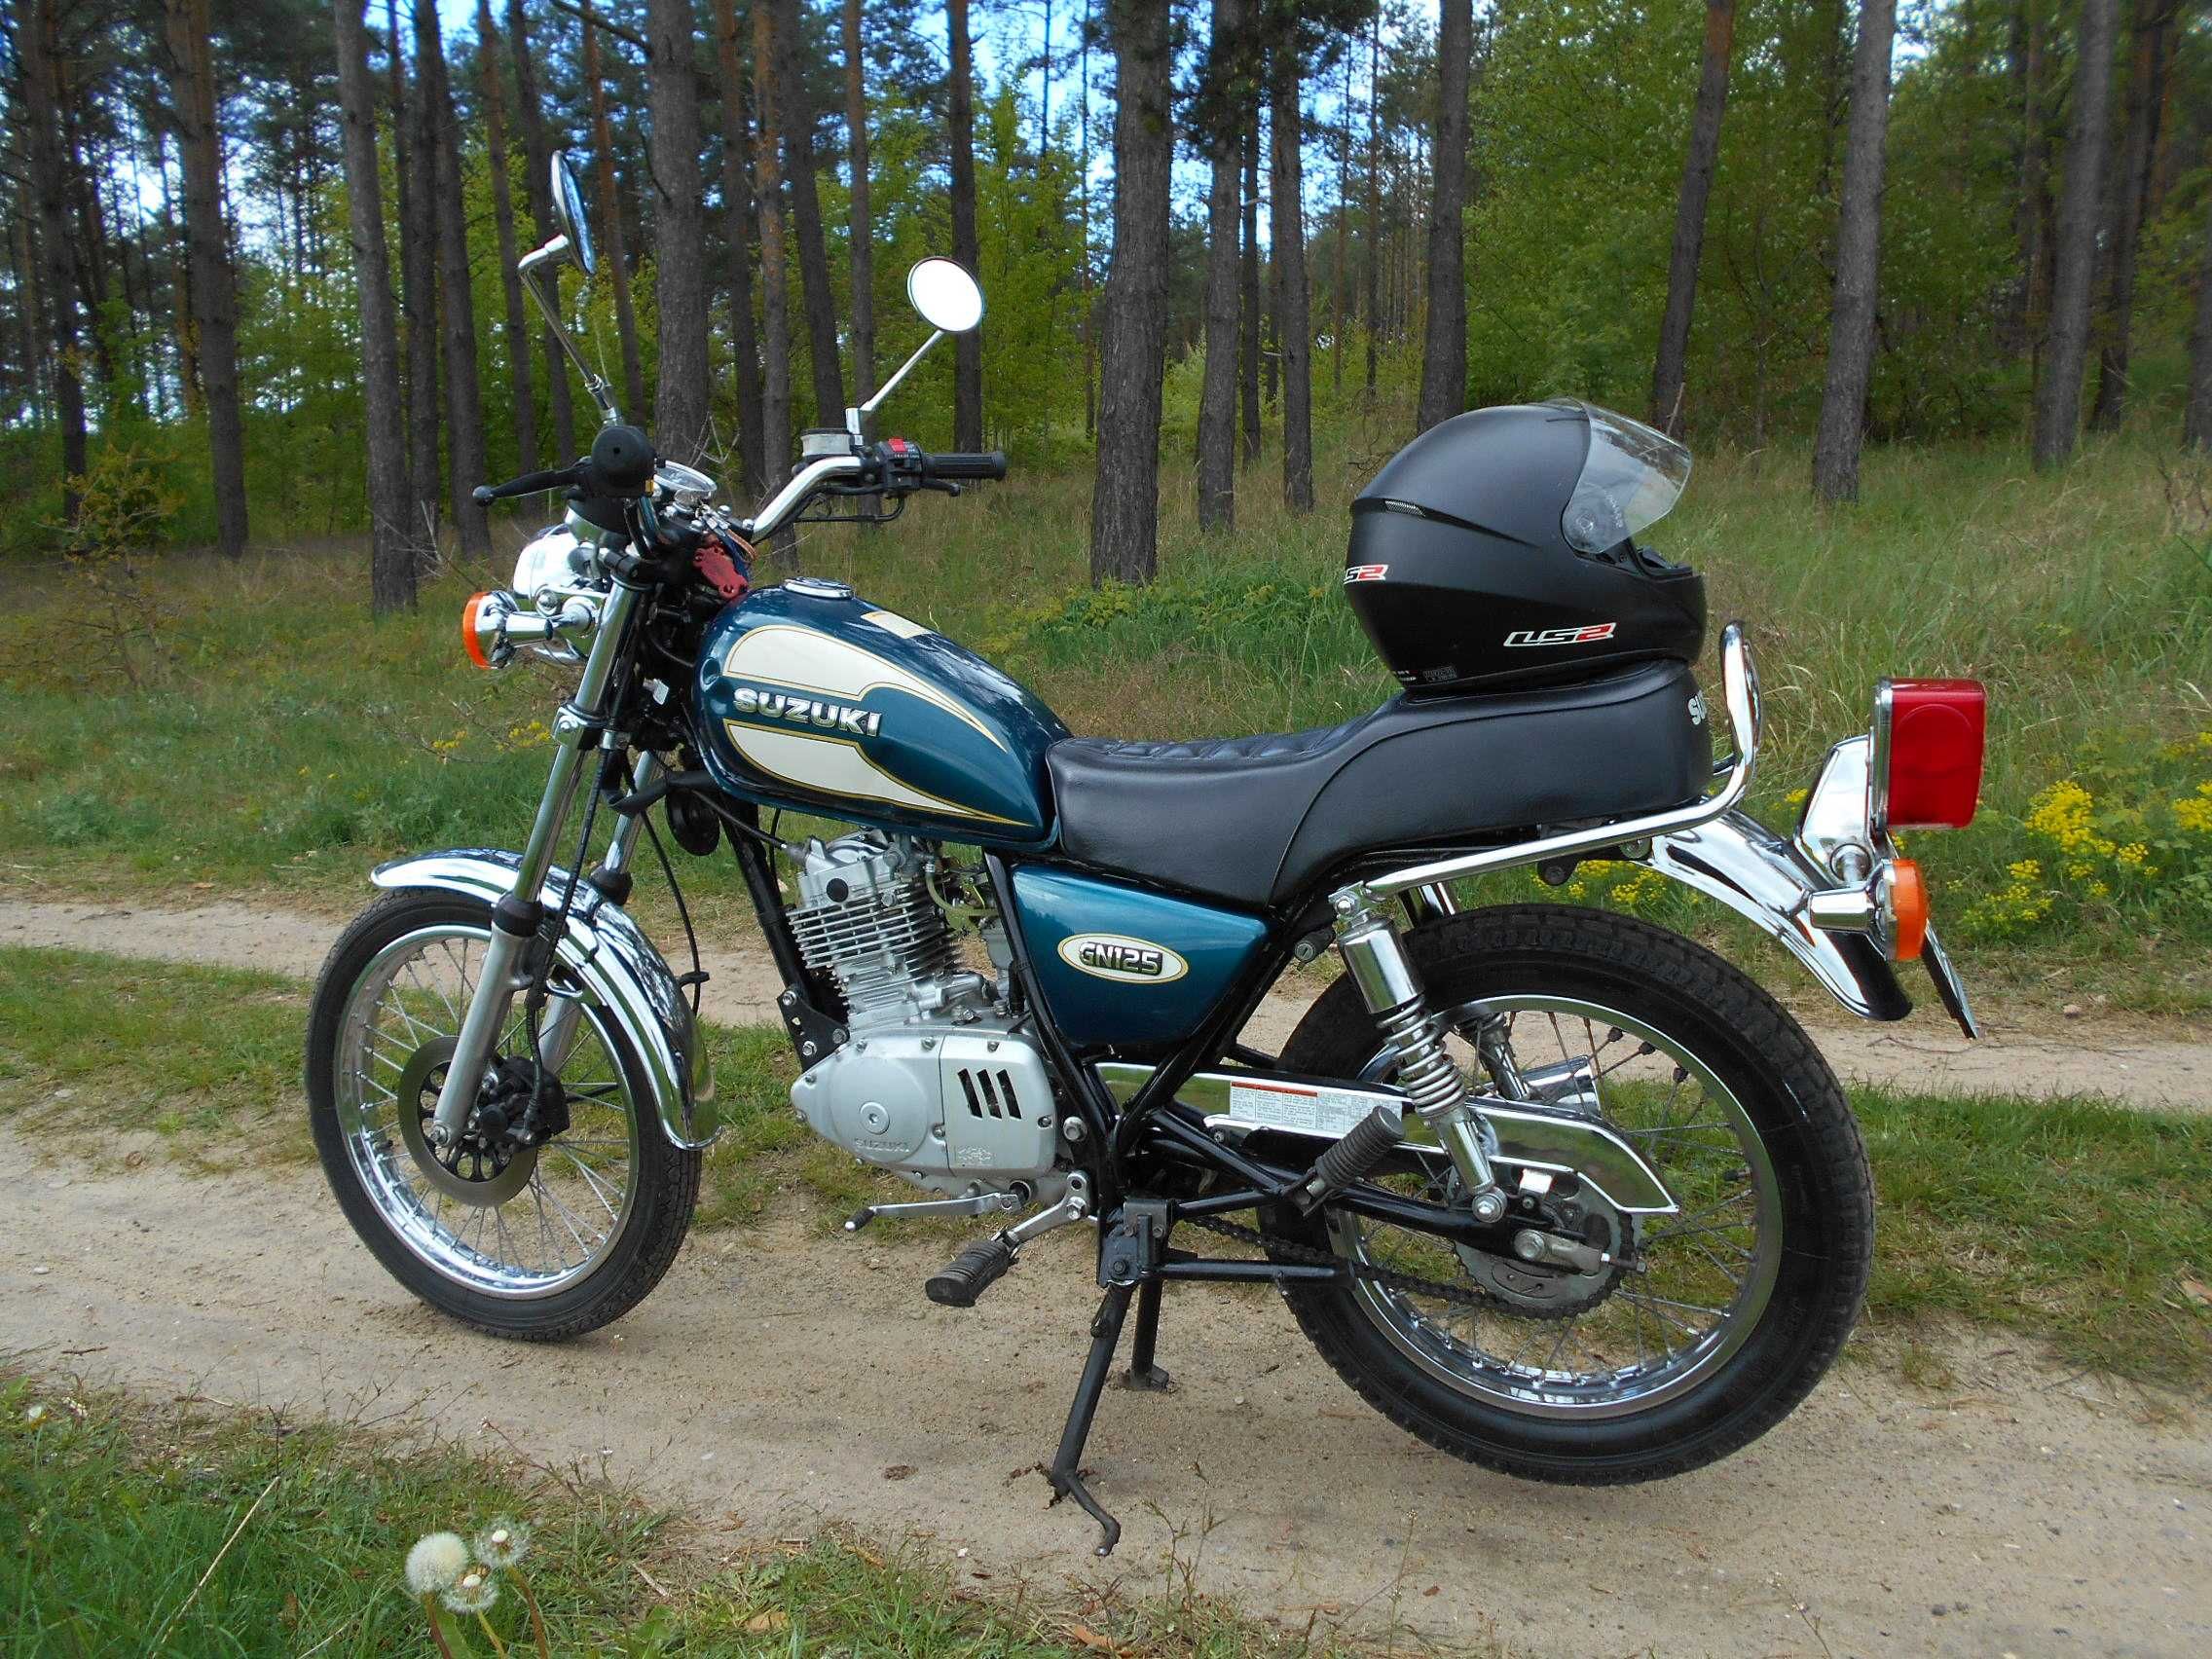 Motocykl Suzuki GN125 / 1998r. zarejestrowany